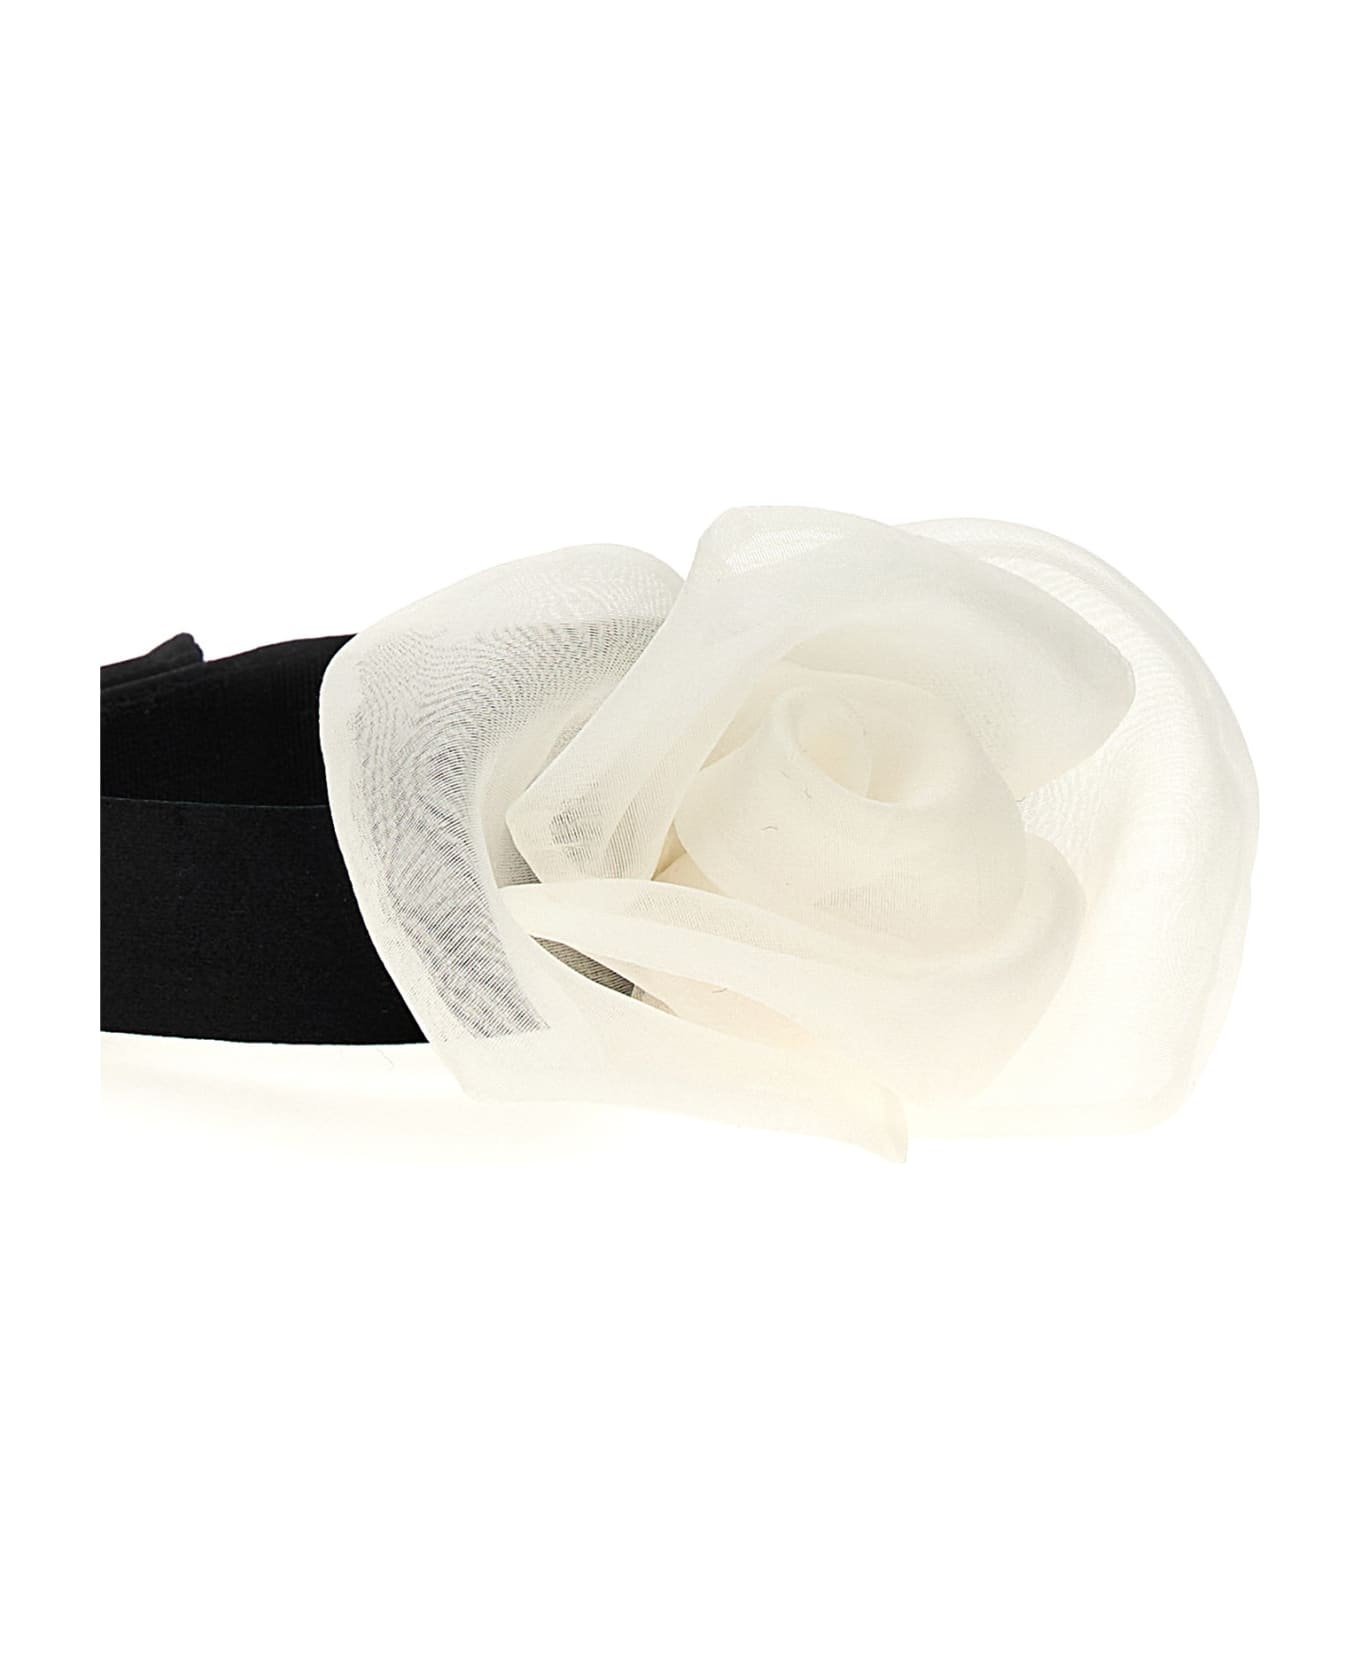 Dolce & Gabbana Flower Choker - White/Black